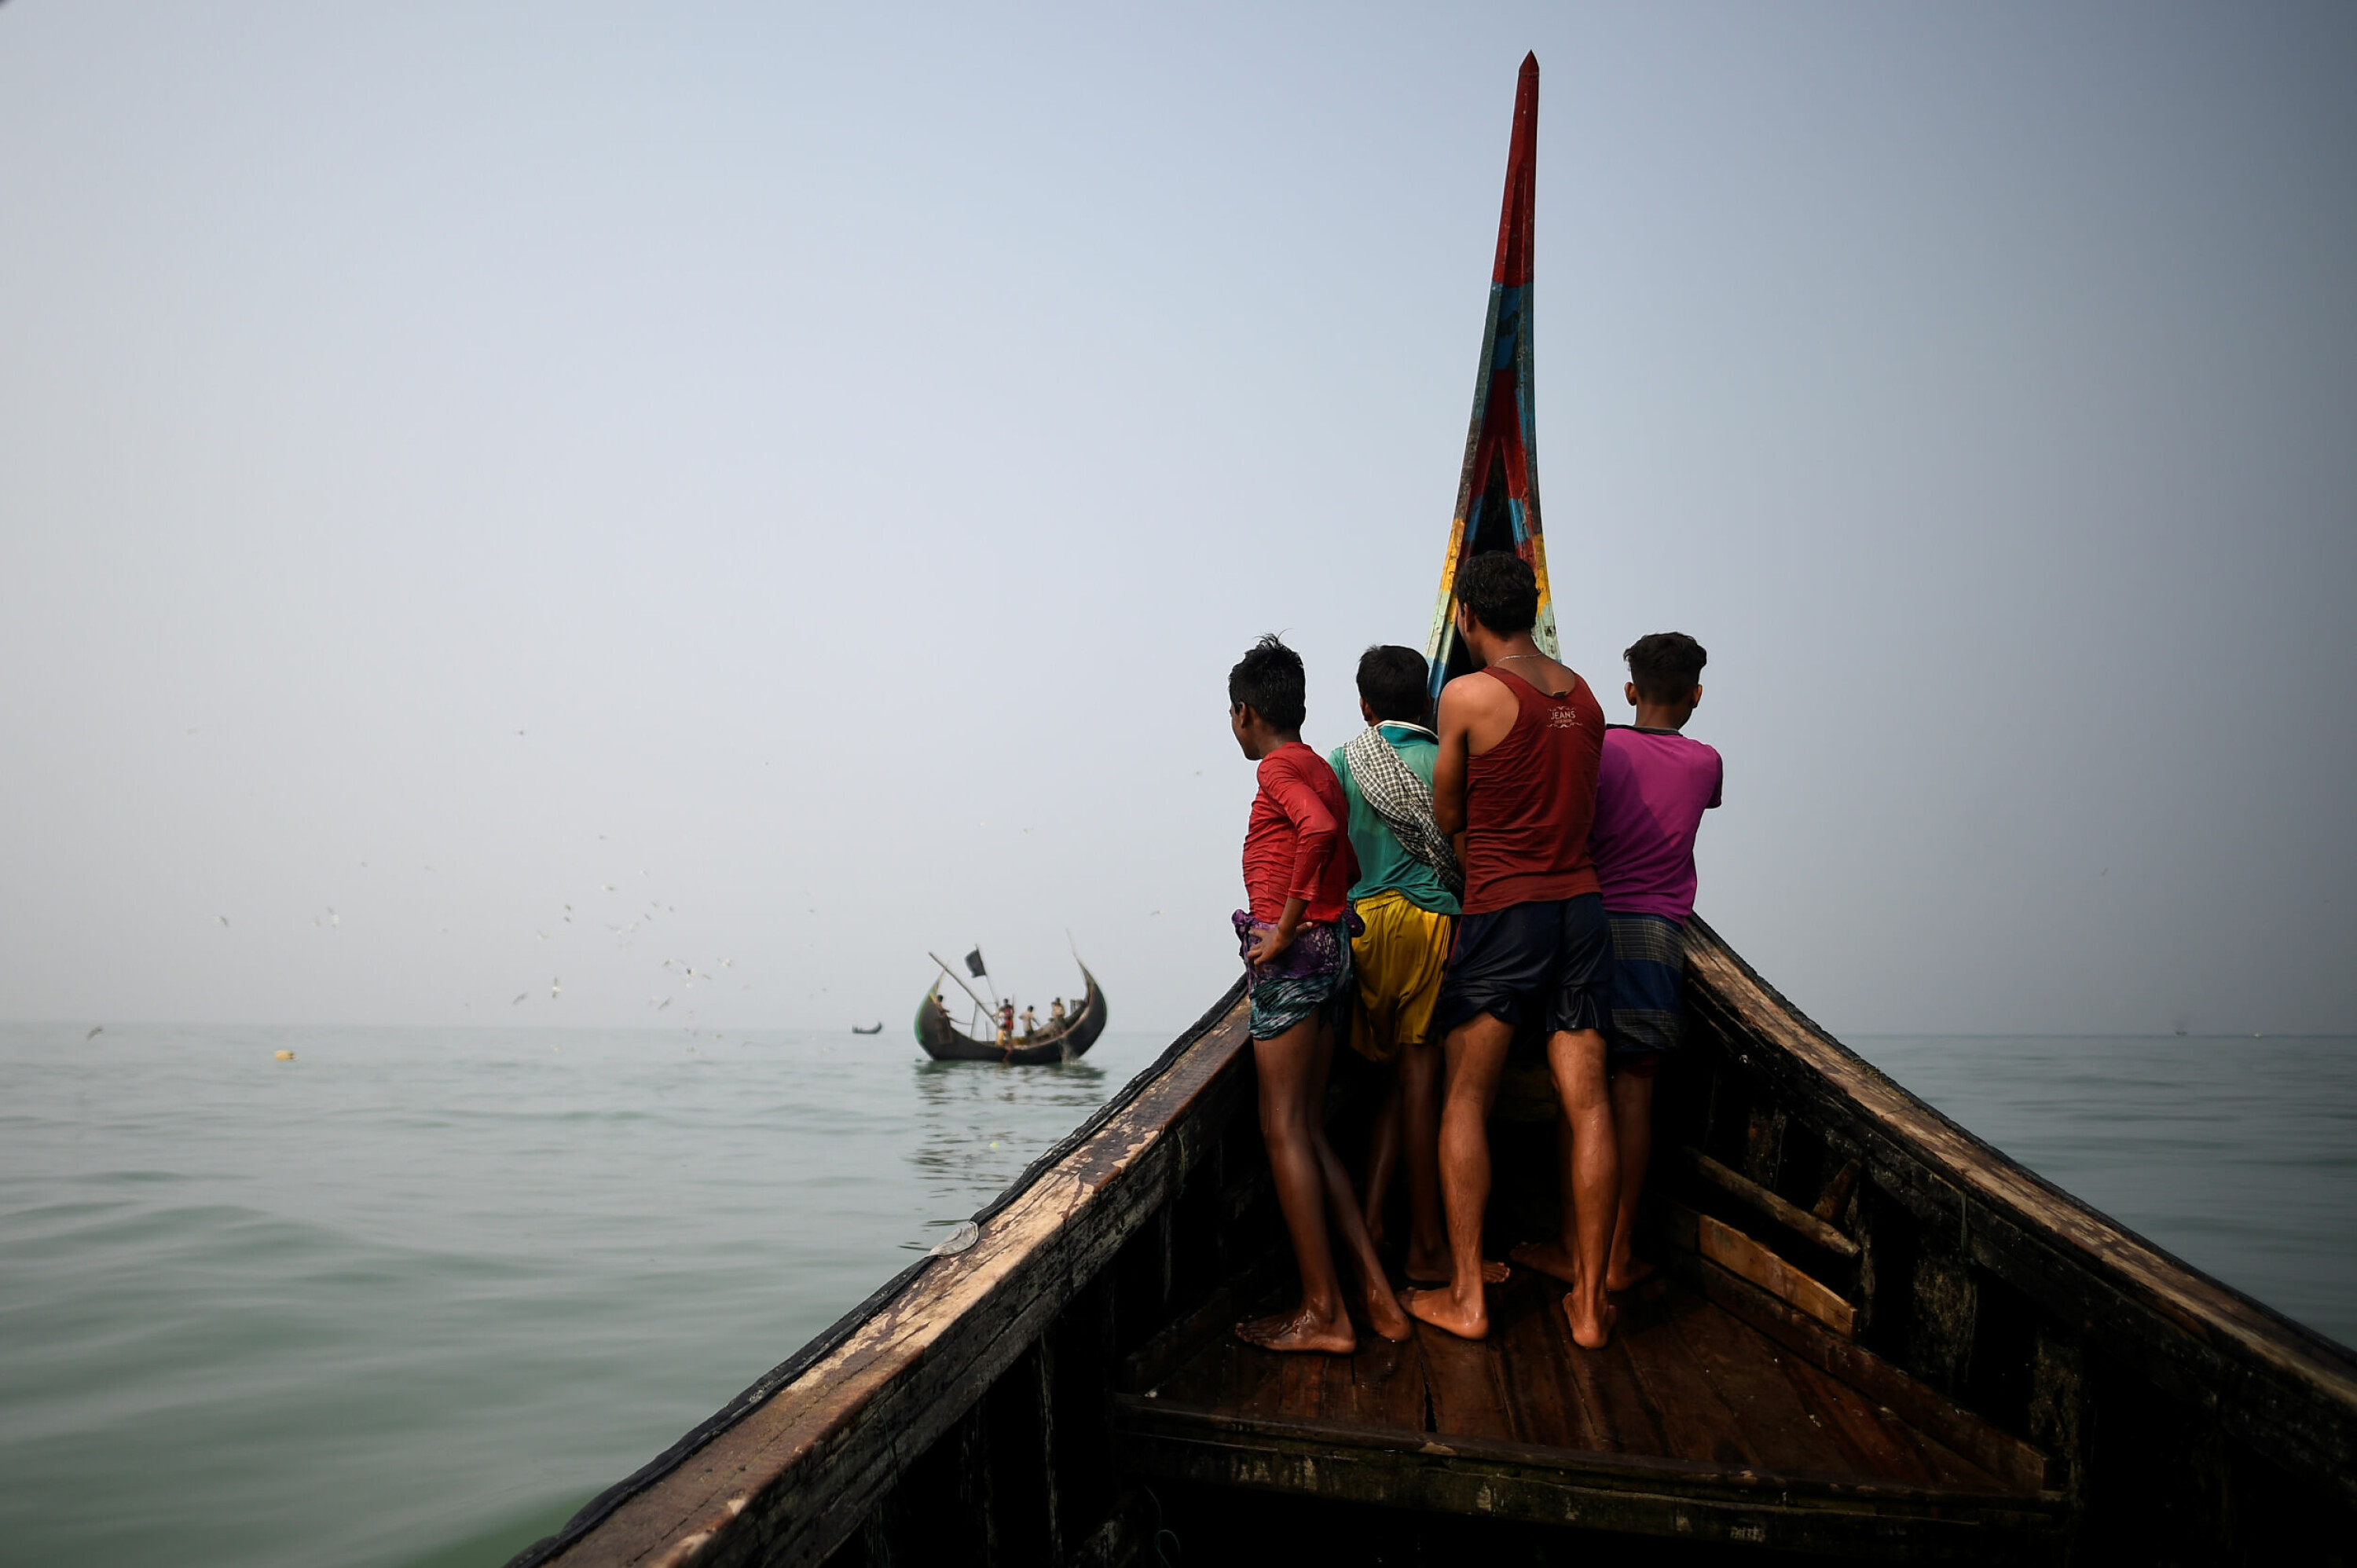 Noen av de hundretusener av rohingyaflyktningene som har søkt tilflukt i Bangladesh har fått tillatelse til å søke arbeid i fiskeindustrien. Men de enorme leirene rundt Cox´s Bazar er ikke et blivende sted for en hardt prøvet, statsløs, befolkning.